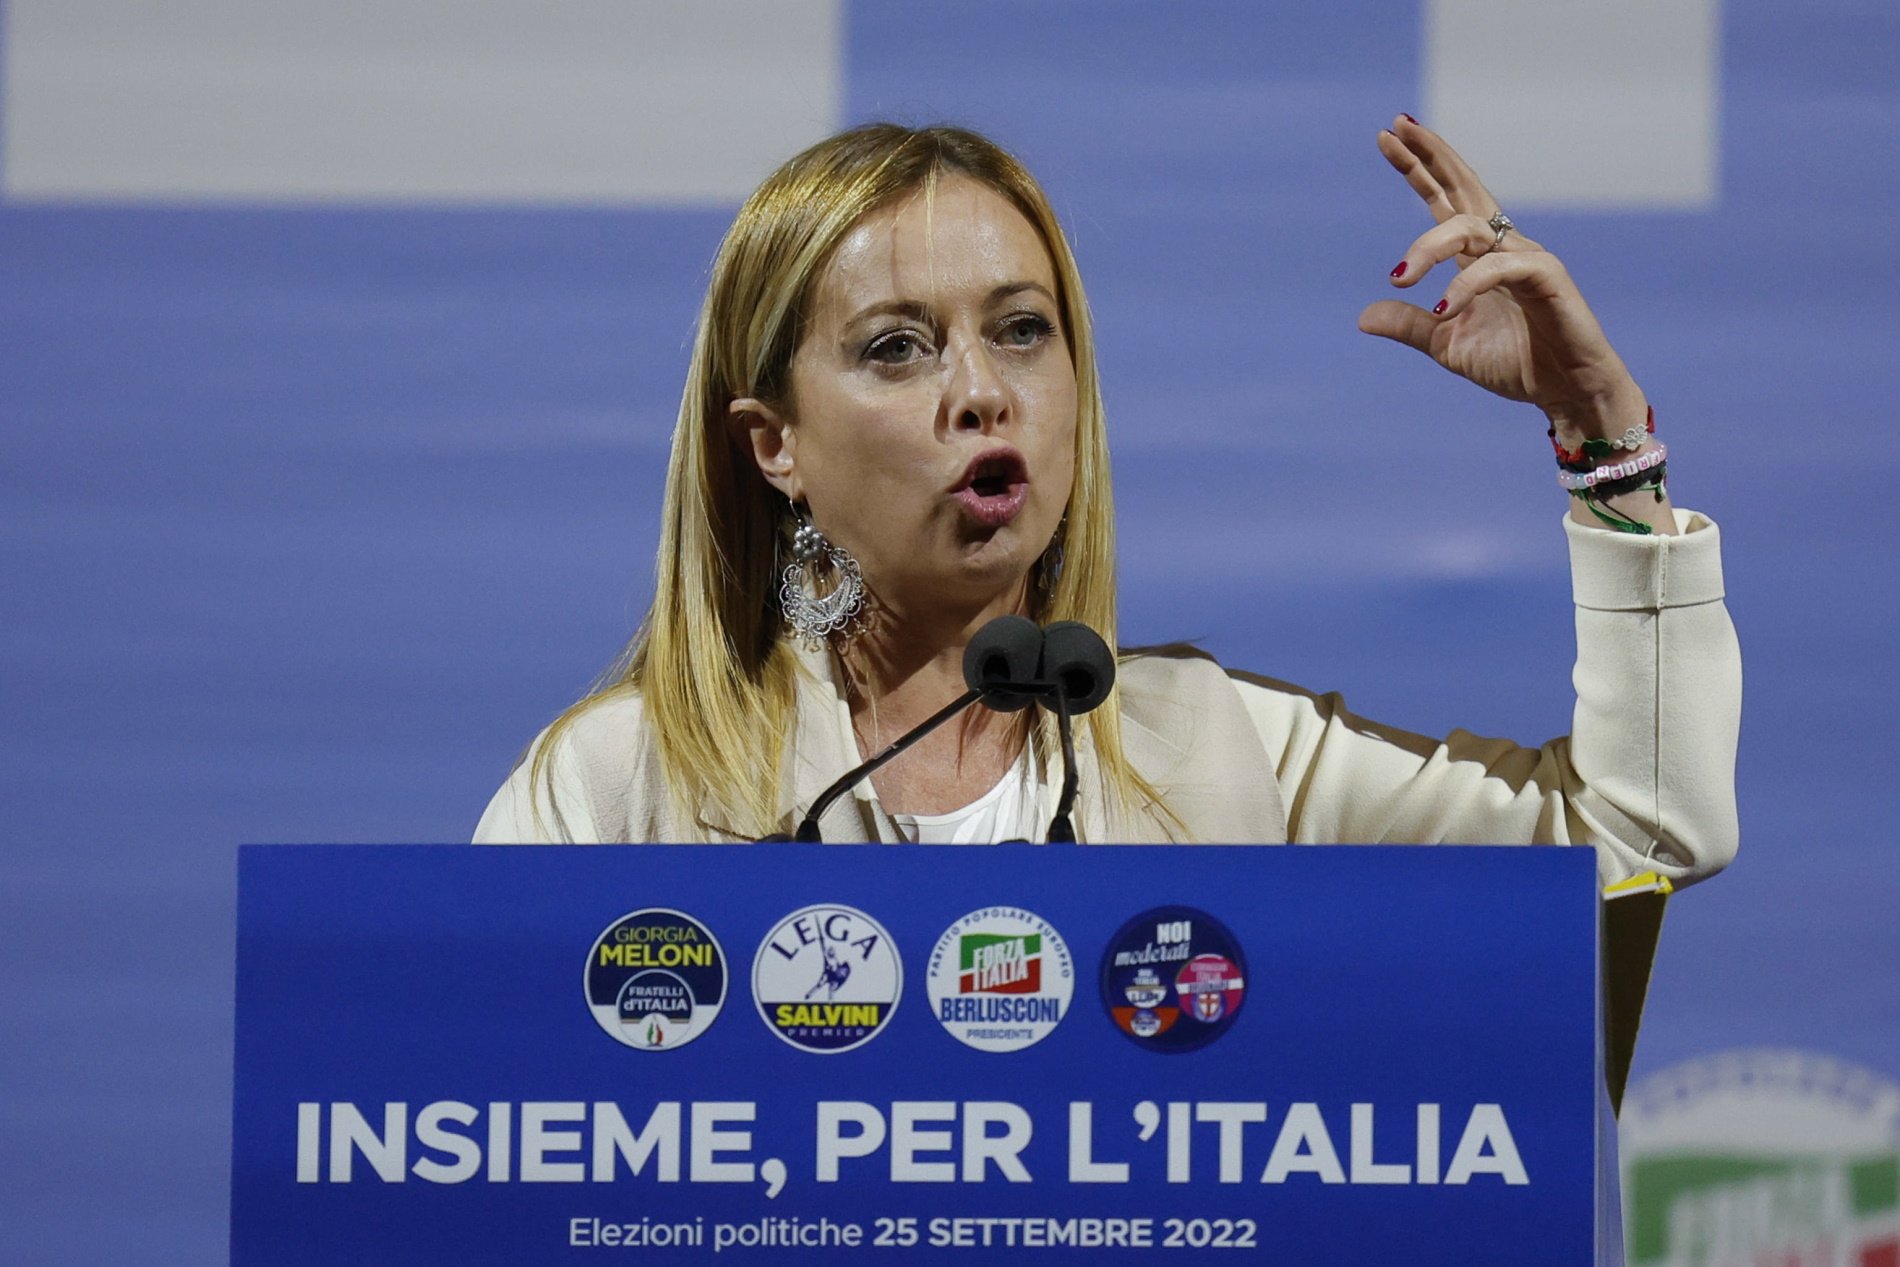 La extrema derecha sigue liderando las encuestas horas antes de las elecciones de Italia 2022